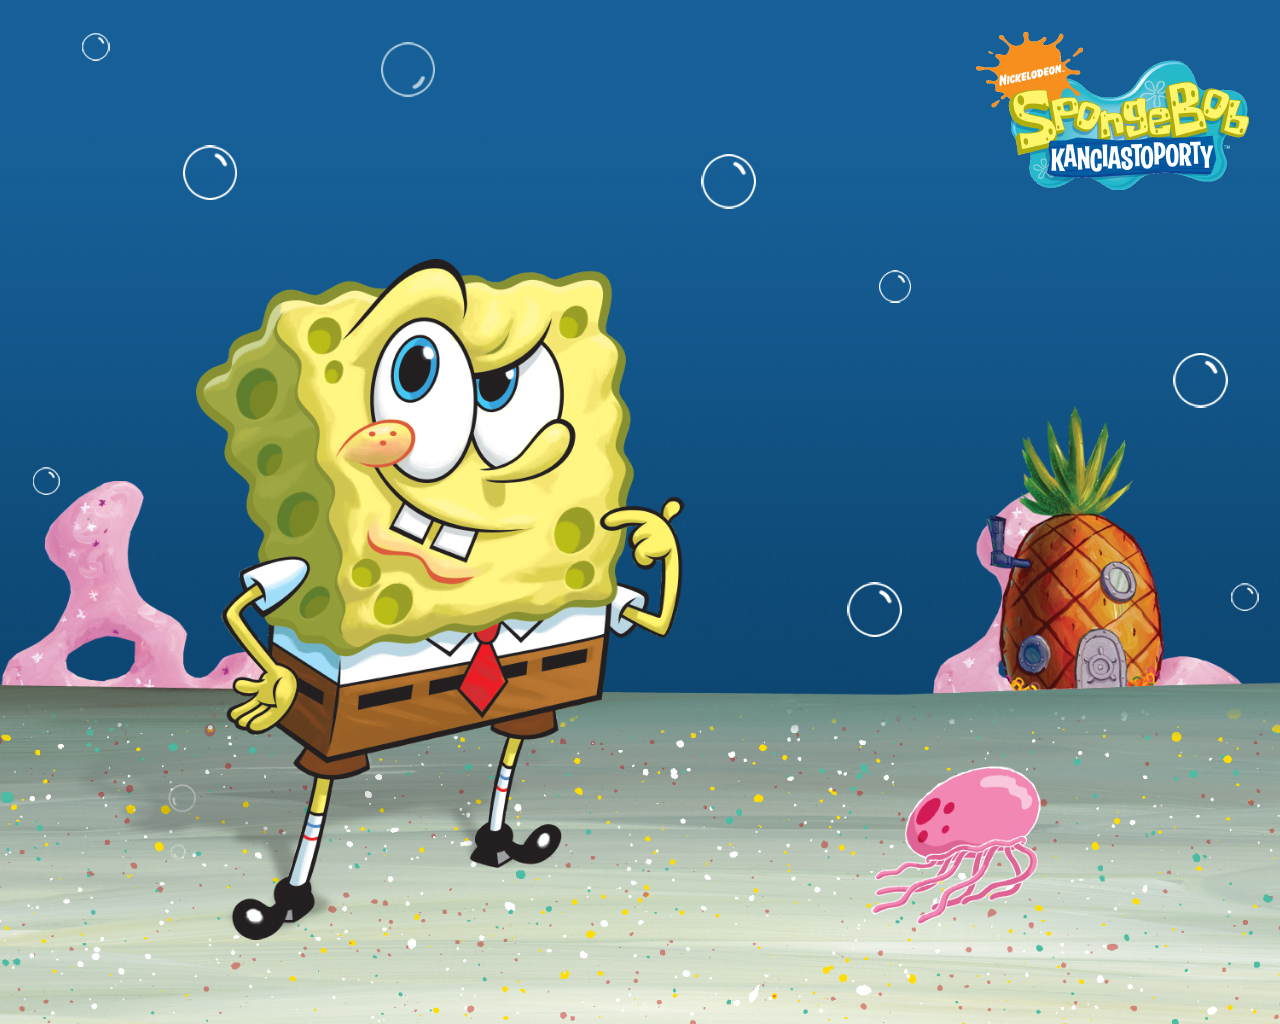 Spongebob スポンジボブ スクエアパンツ 壁紙 ファンポップ